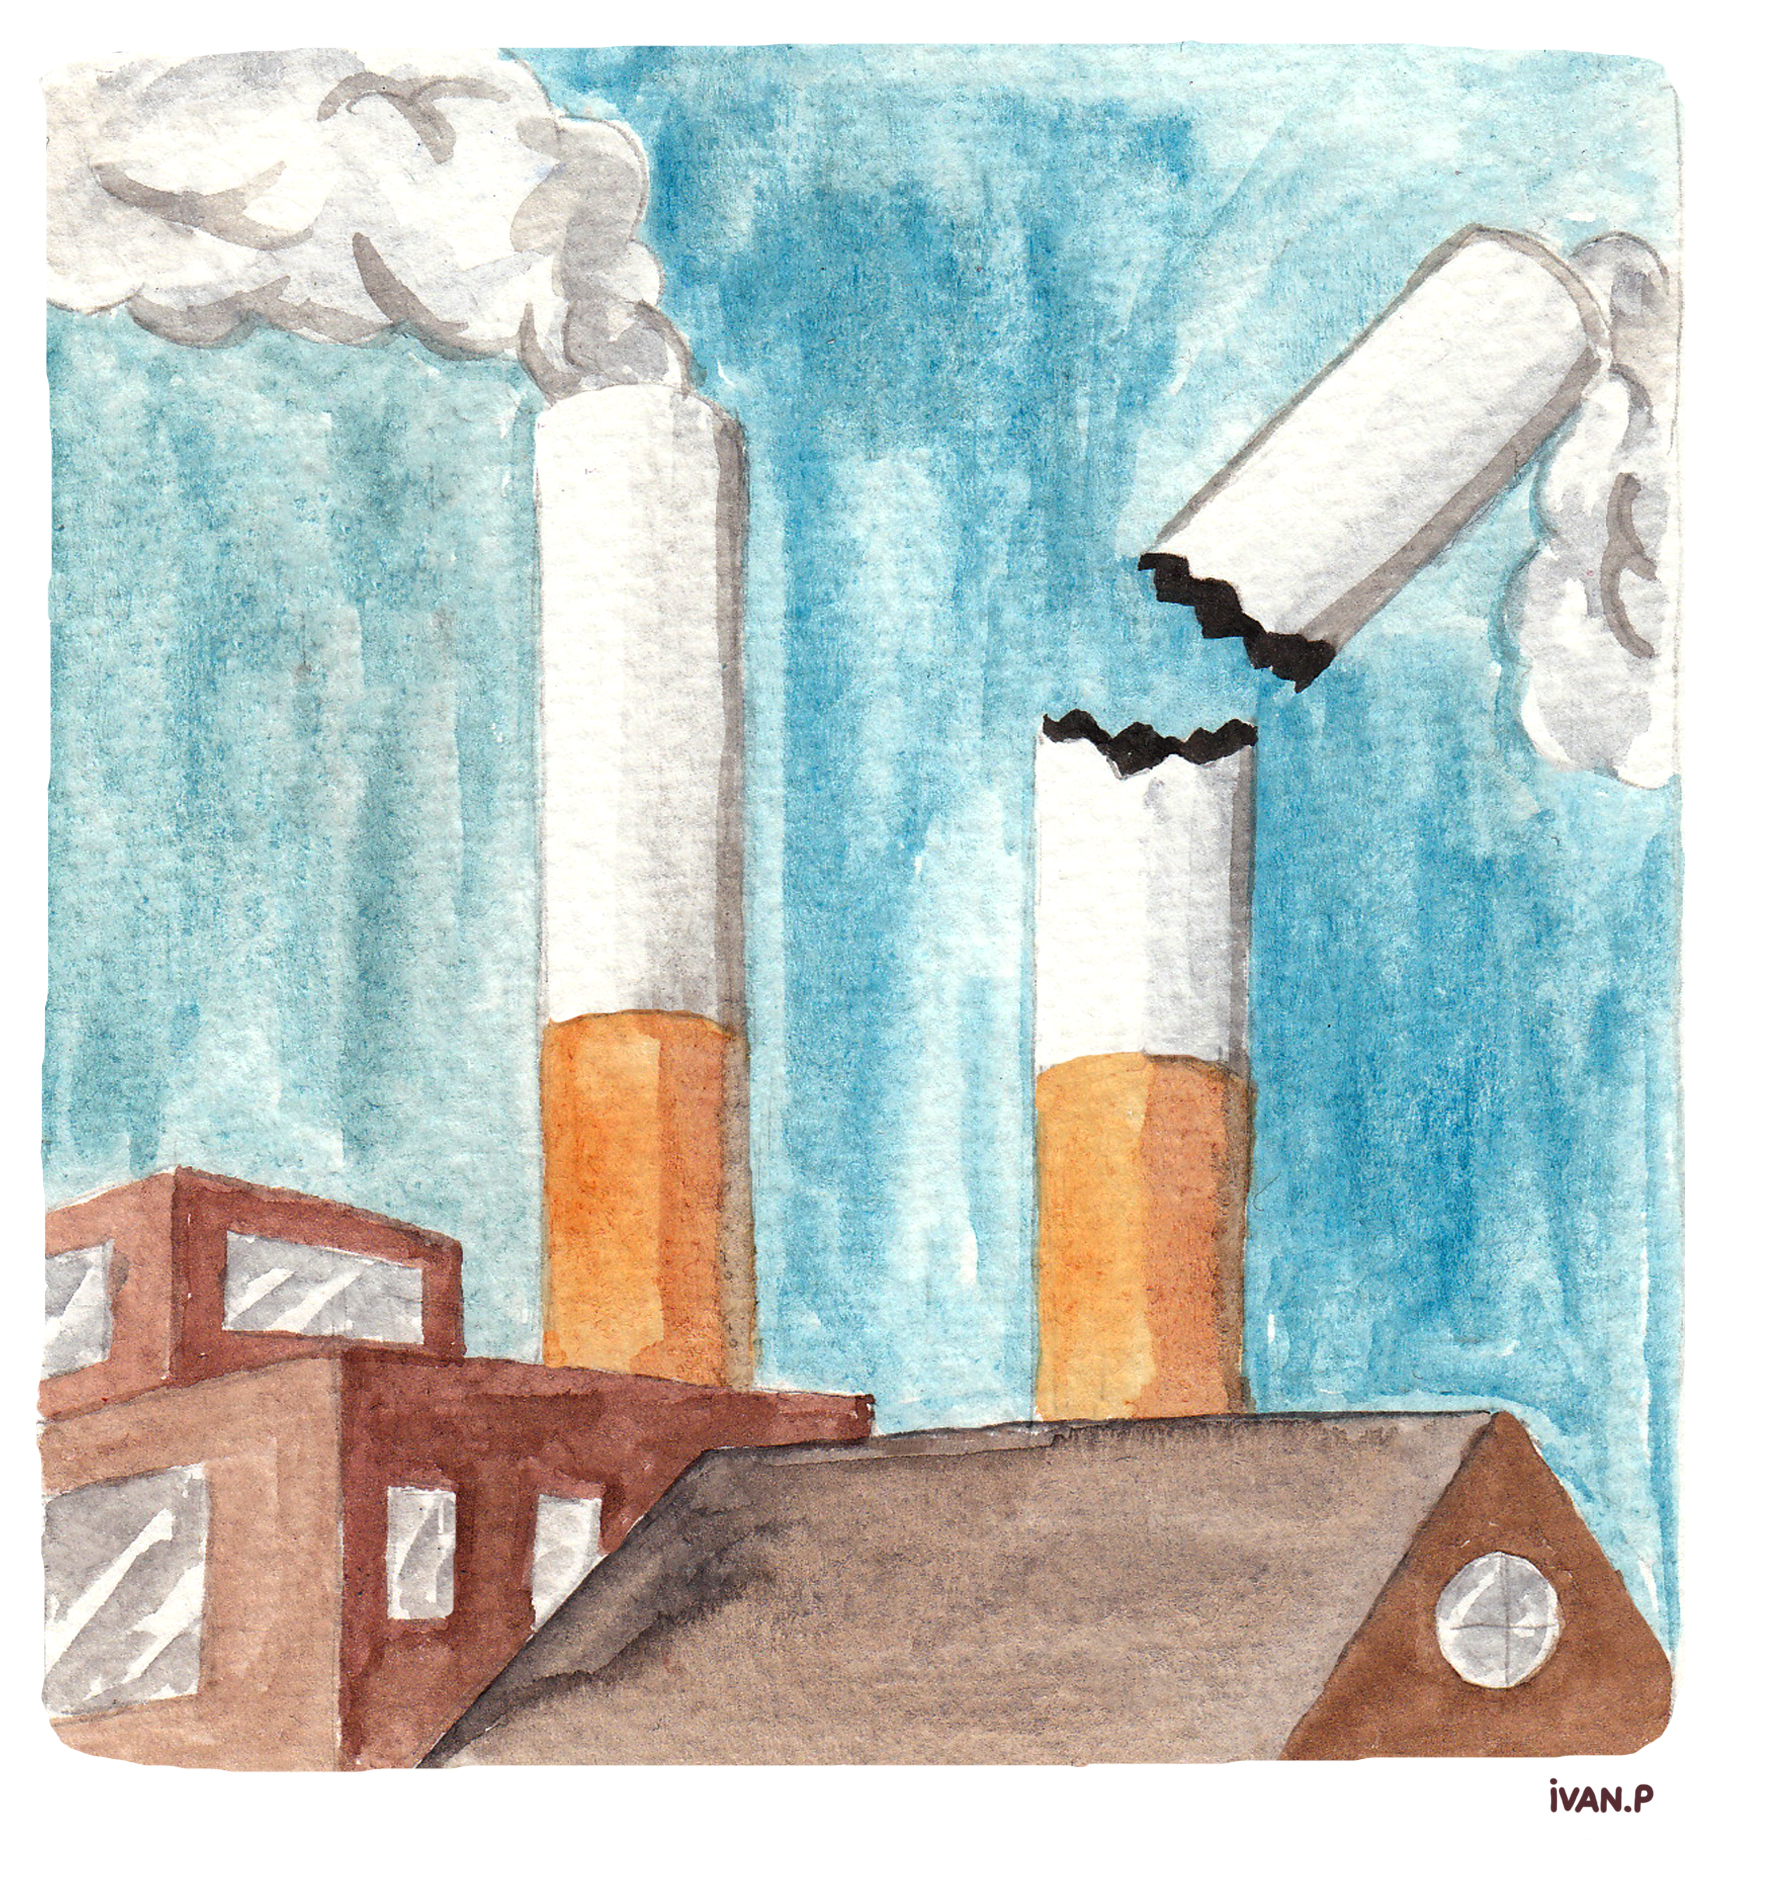 Illustration d'Ivan P sur l'industrie du tabac et le lobbying des grandes entreprises productrices de cigarettes.